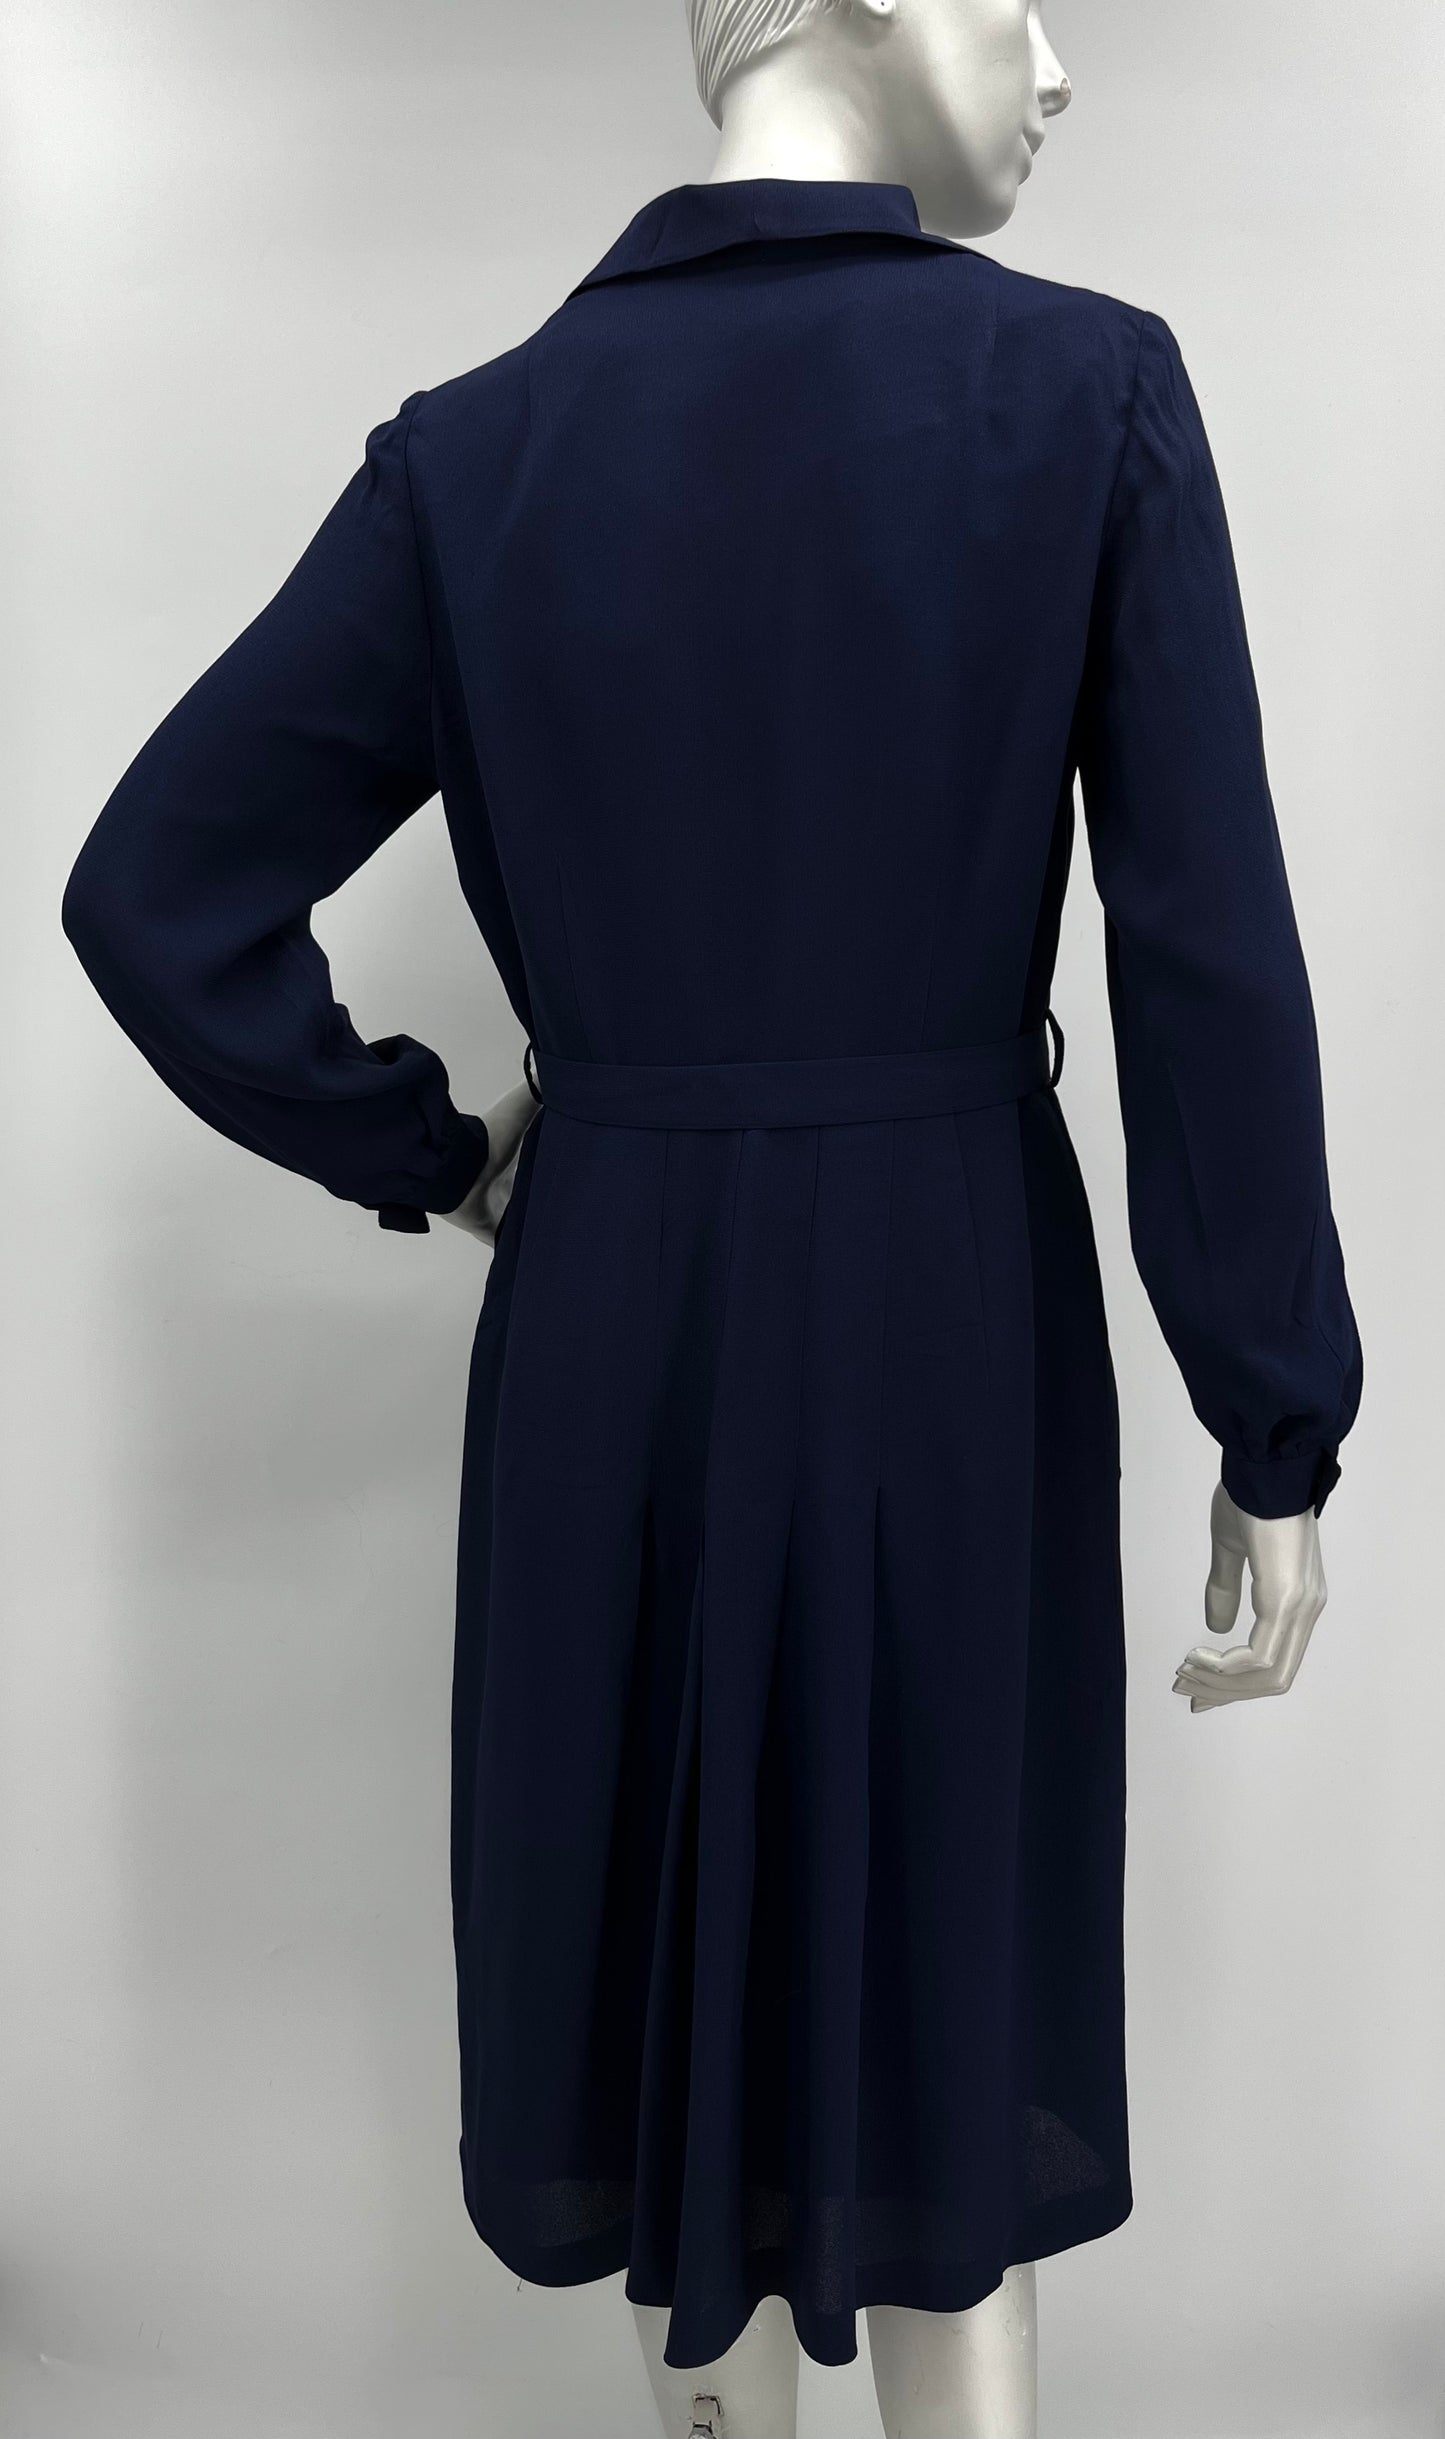 Tummansininen mekko, vyö ja huivi, 80-90-luku, koko 38-40